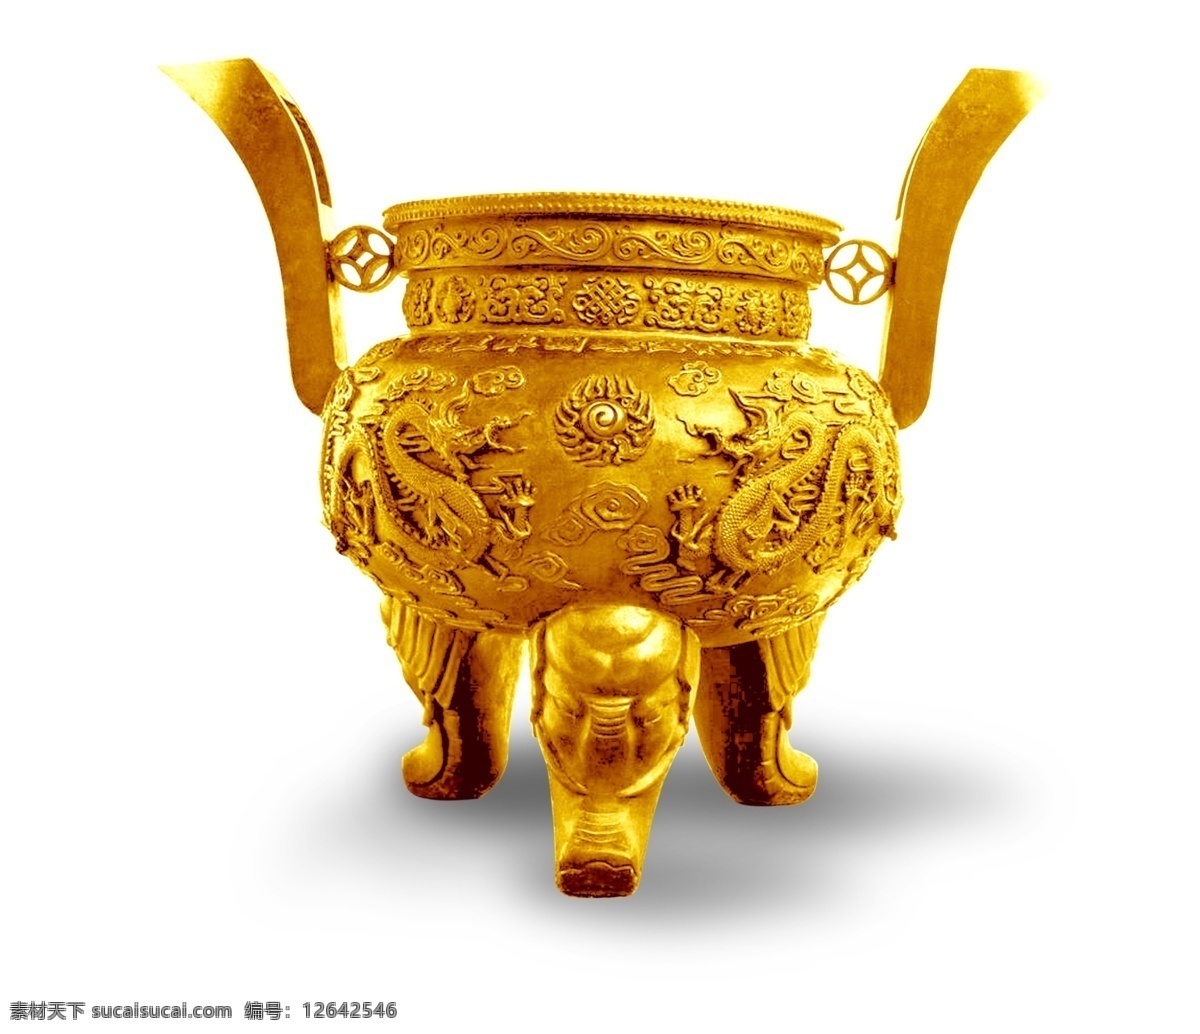 金鼎 金黄器皿 传统器皿 雕塑 器皿 摆件 古代物件 中国文化 中国物件 古代器物 文物 古董 古代器皿 文化艺术 传统文化